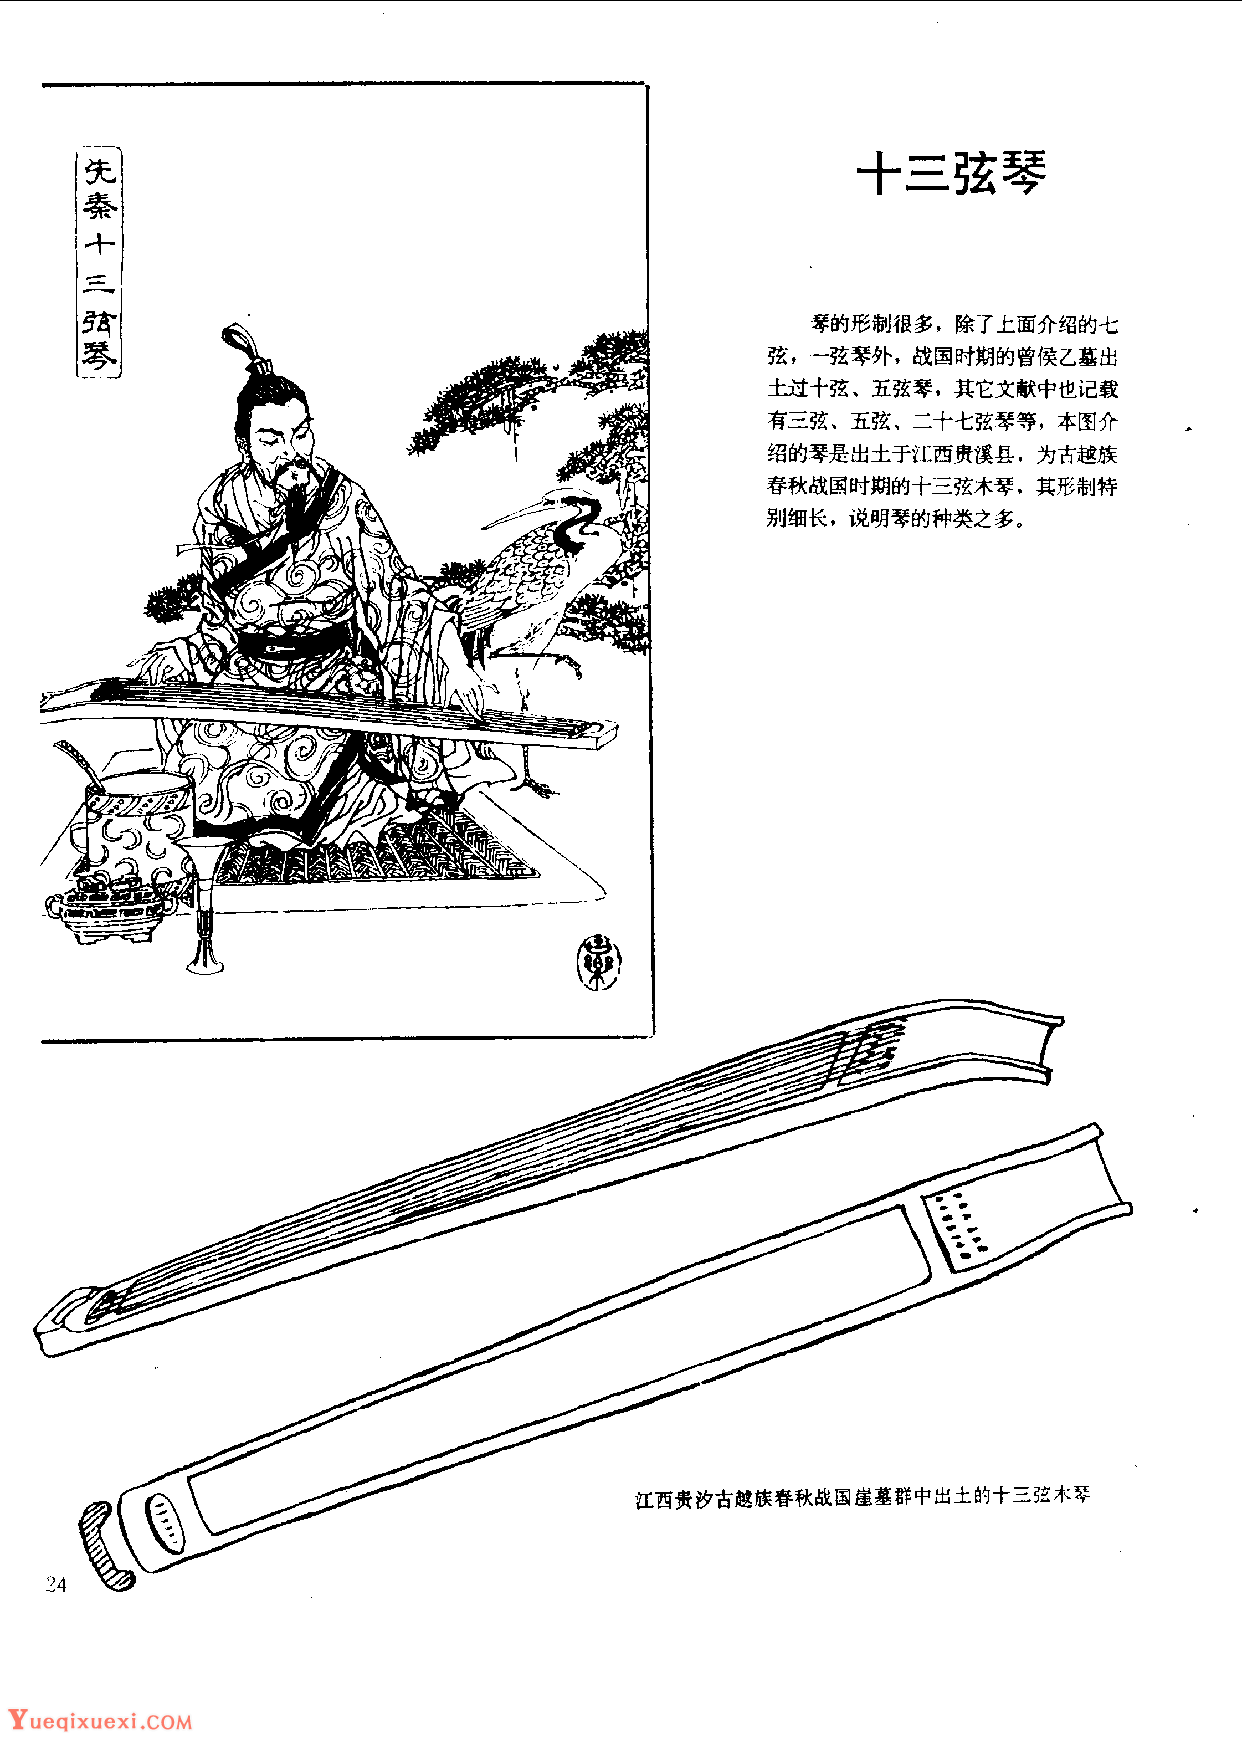 中国古代乐器《十三弦琴》